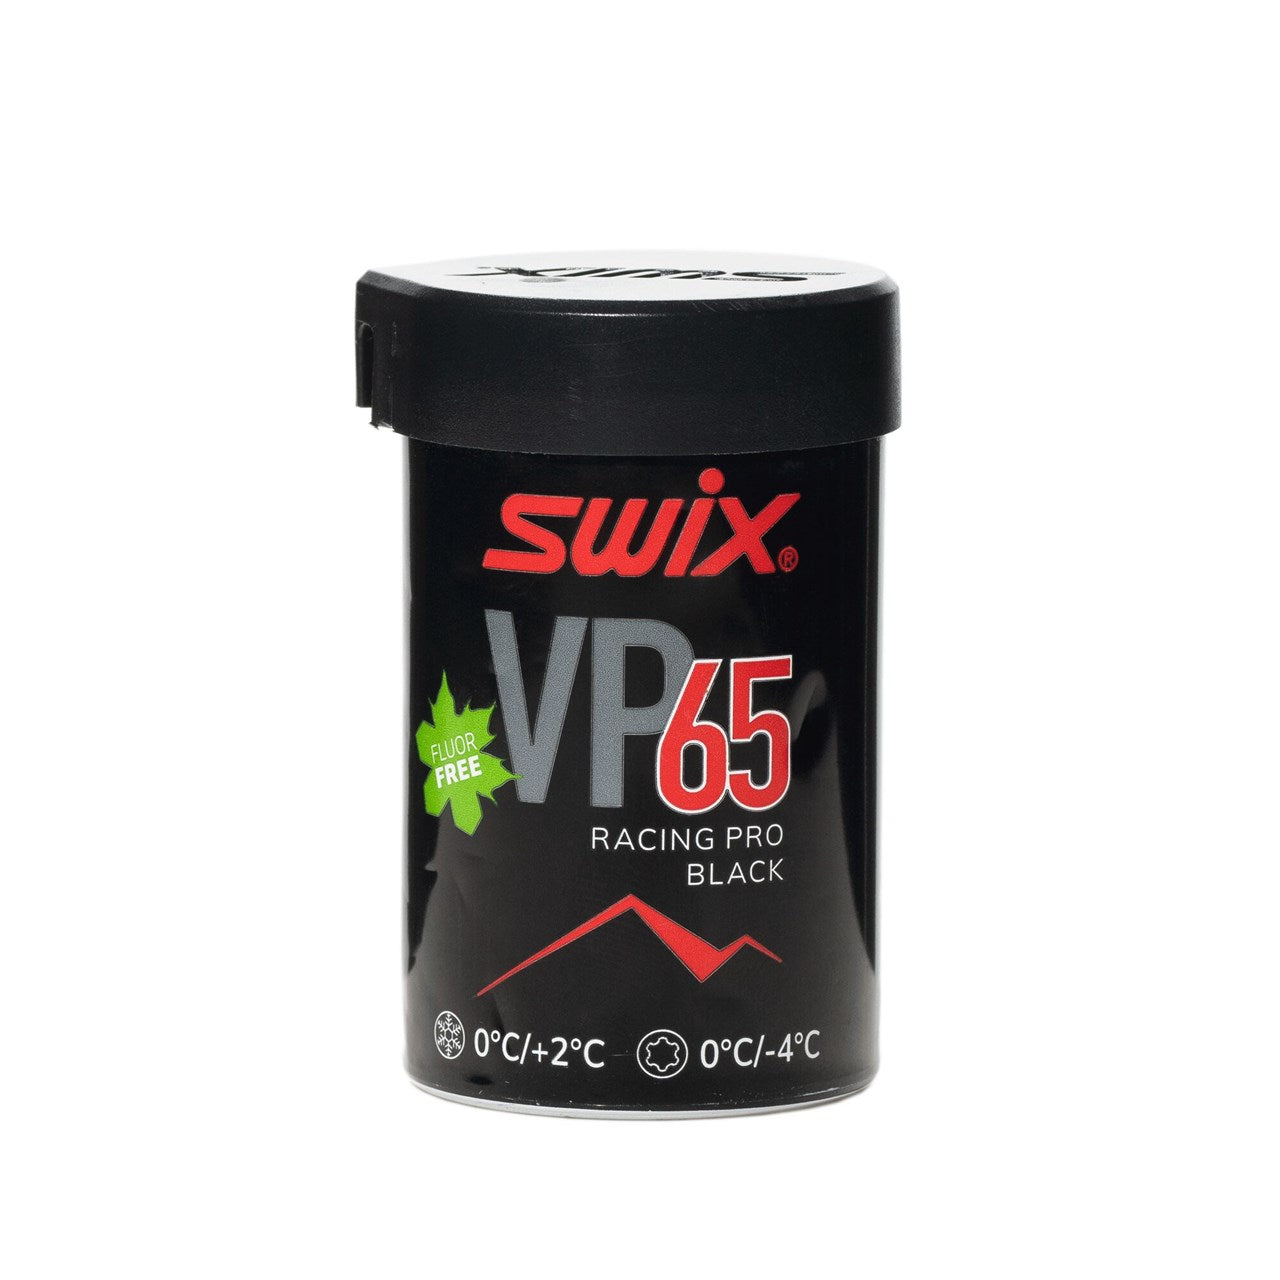 Se Swix Vp65 Pro Black/red 0?c/+2?c, 43g - Skiudstyr hos RejseGear.dk